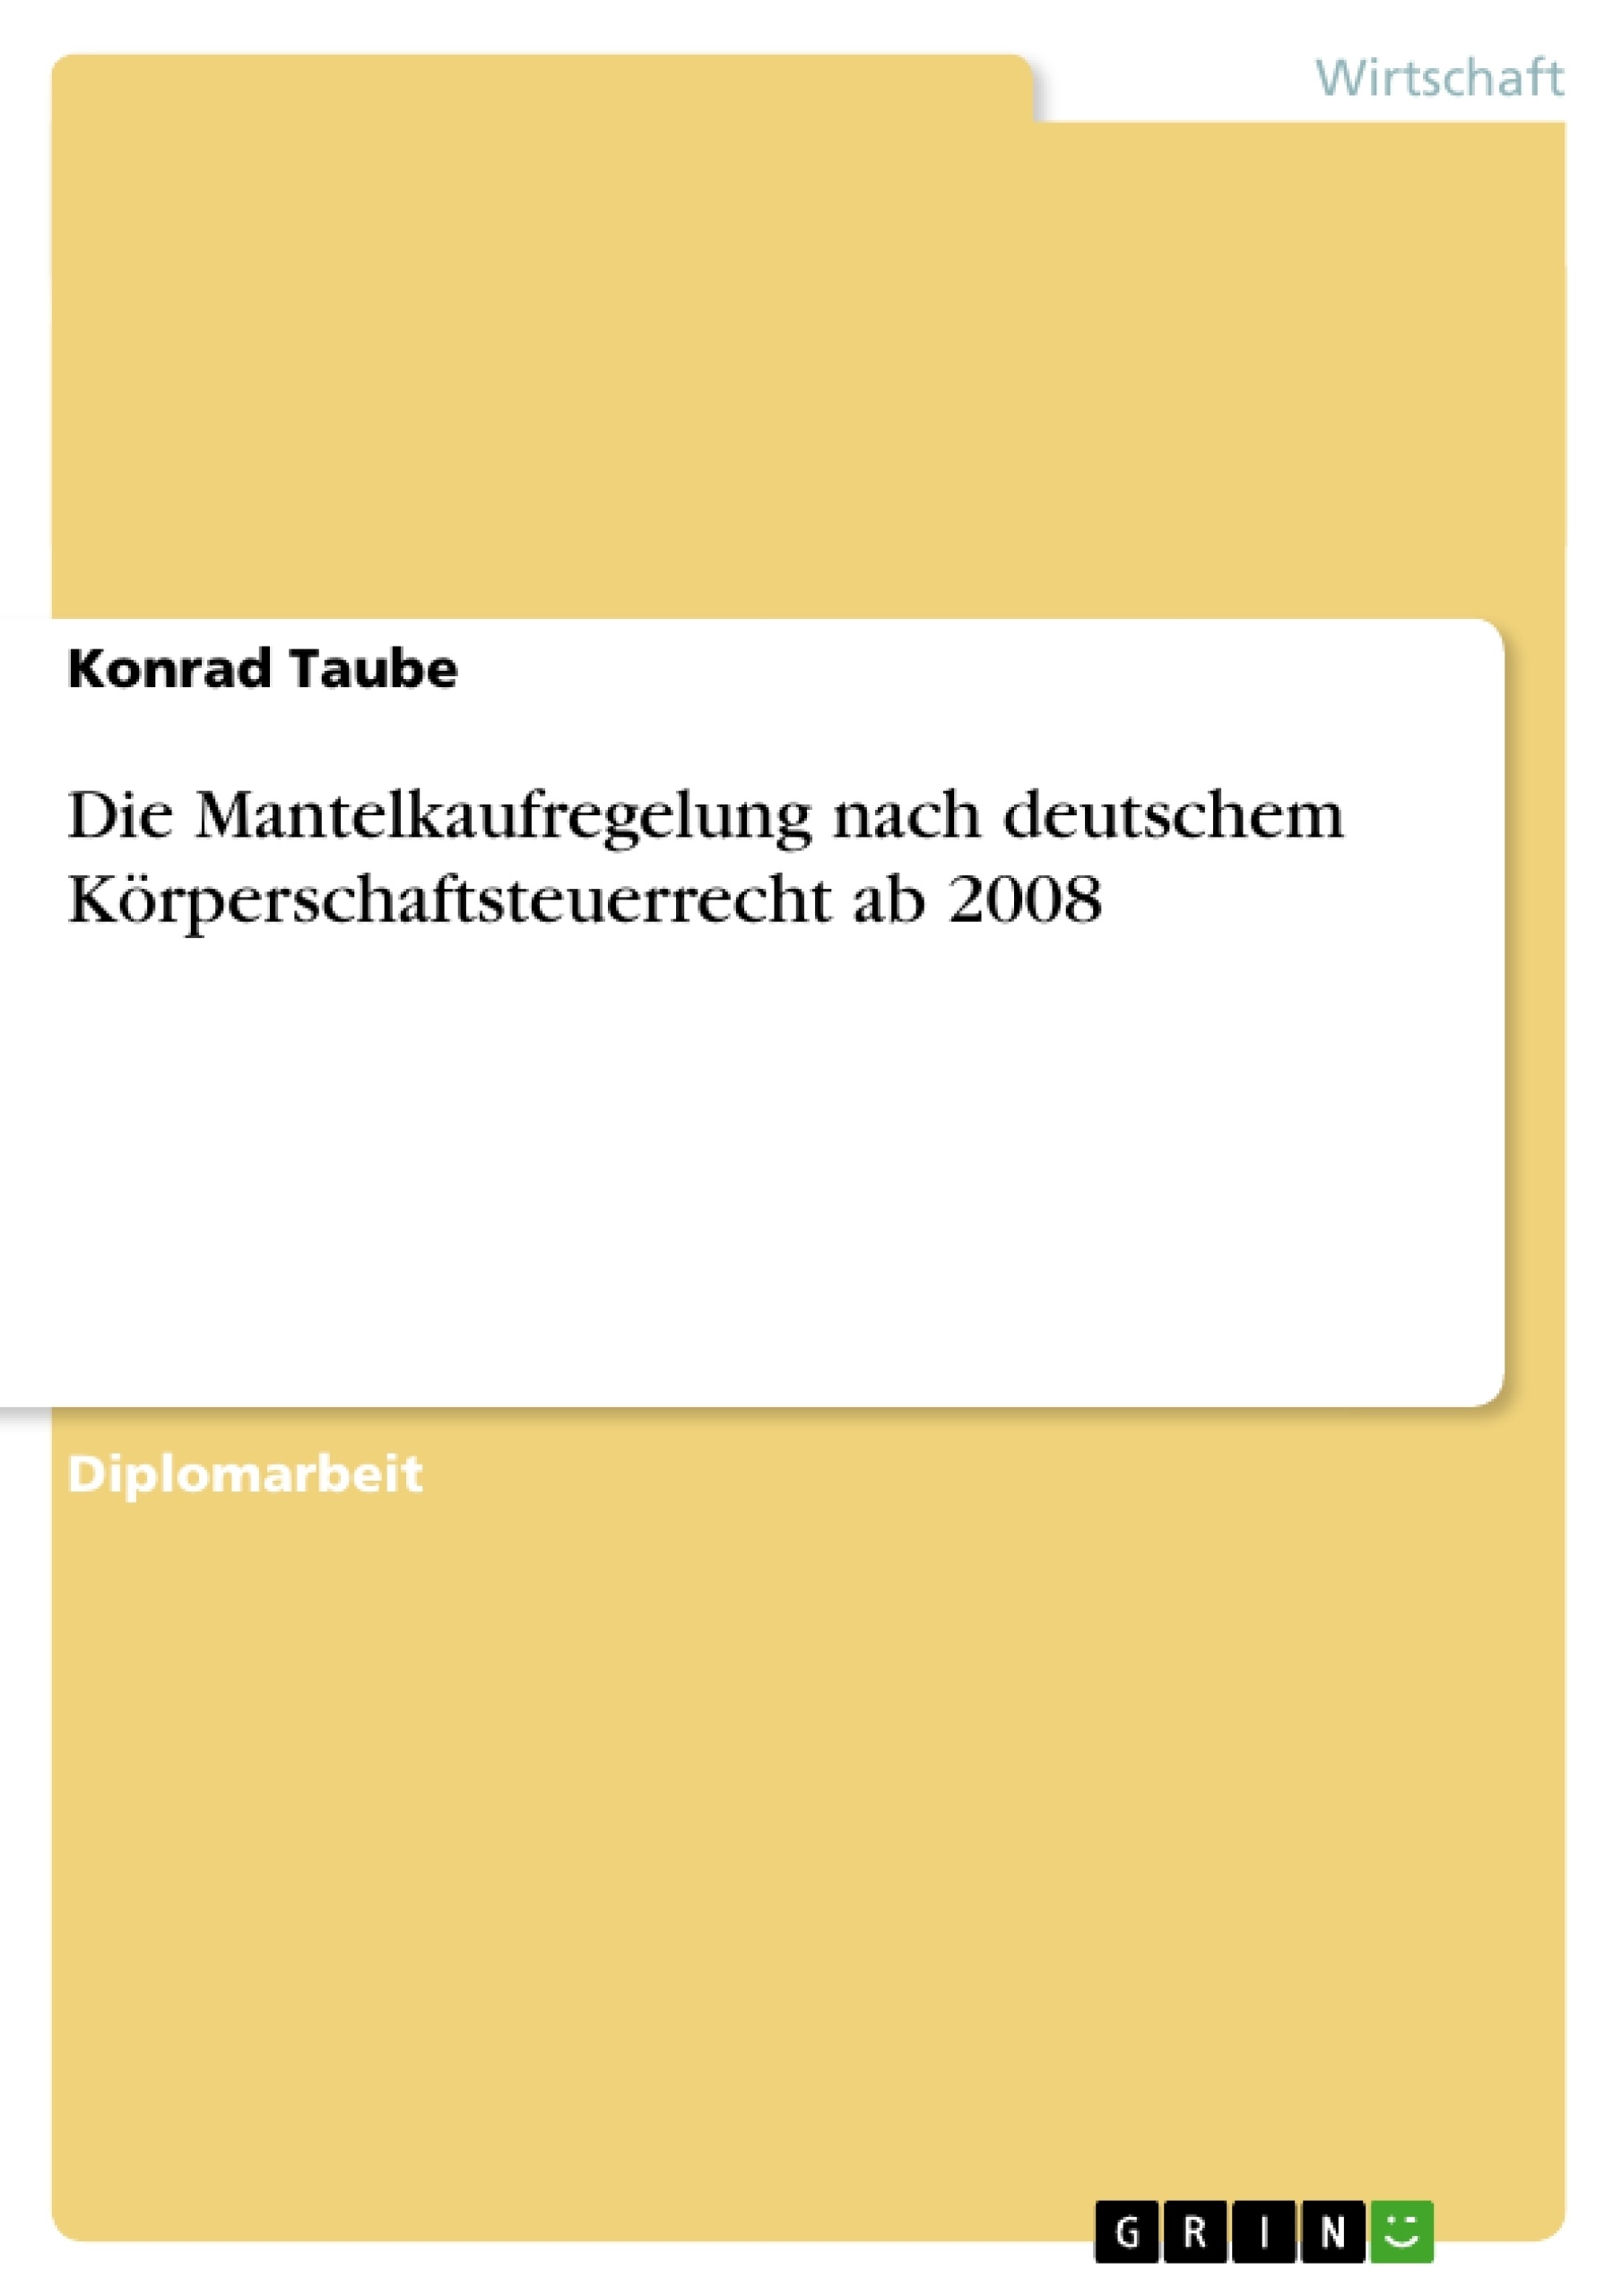 Título: Die Mantelkaufregelung nach deutschem Körperschaftsteuerrecht ab 2008